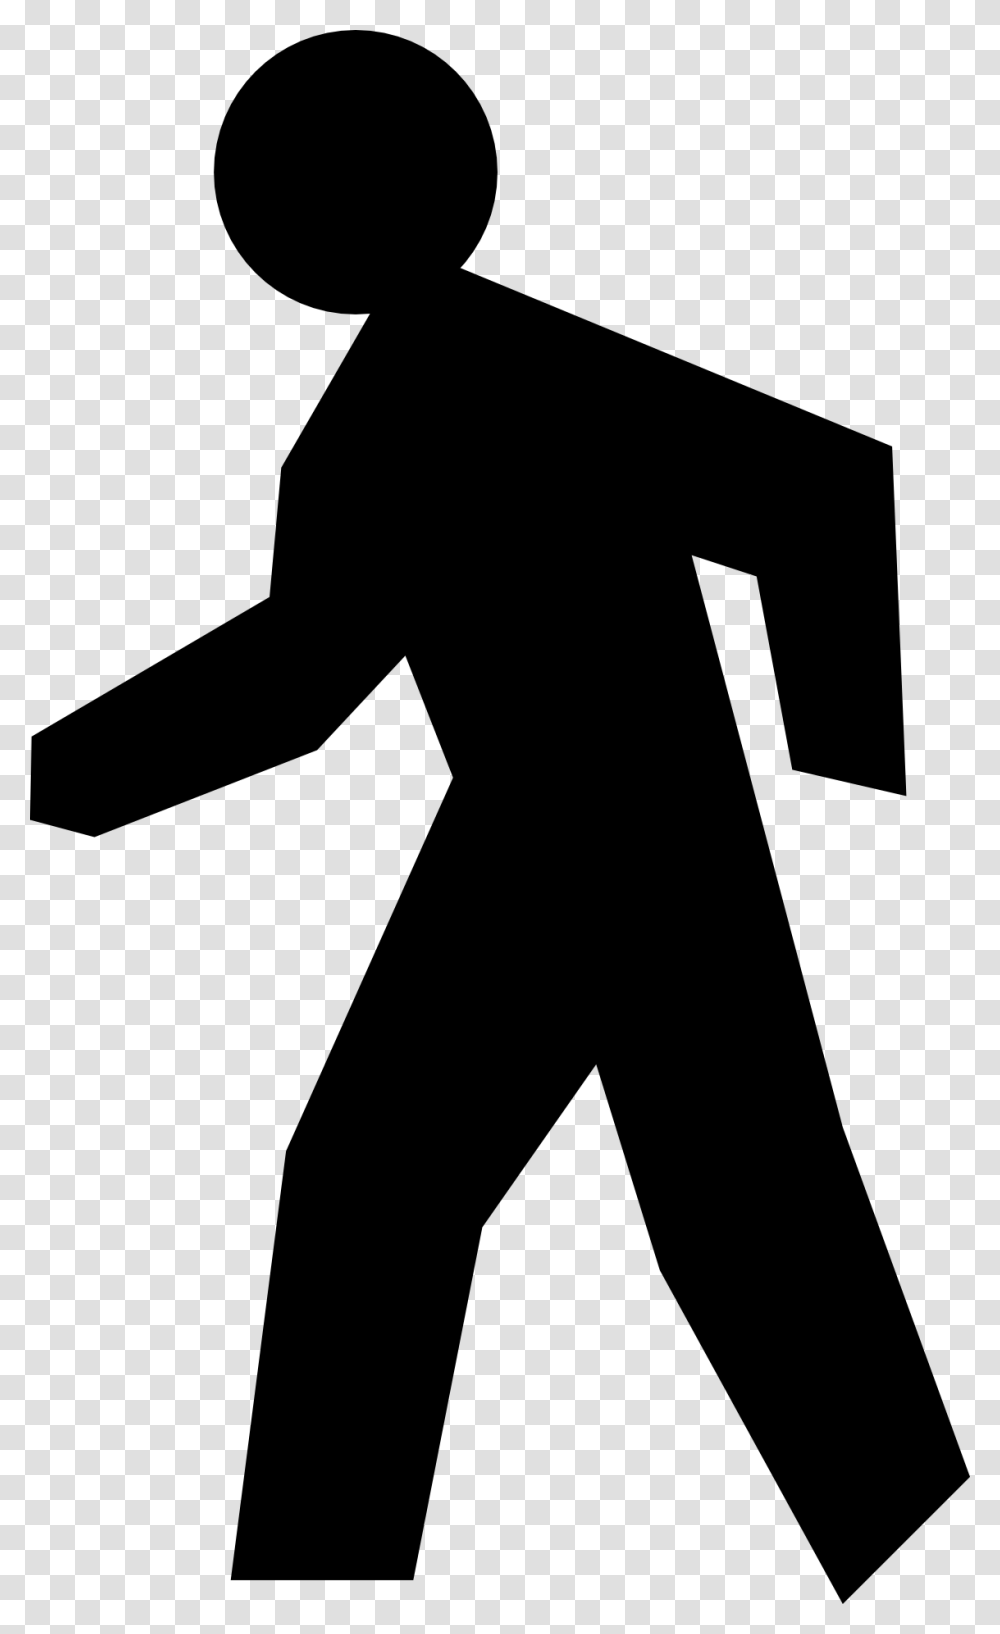 Walking Stick Stick Figure Running Man Transprent, Pedestrian, Silhouette, Hand Transparent Png